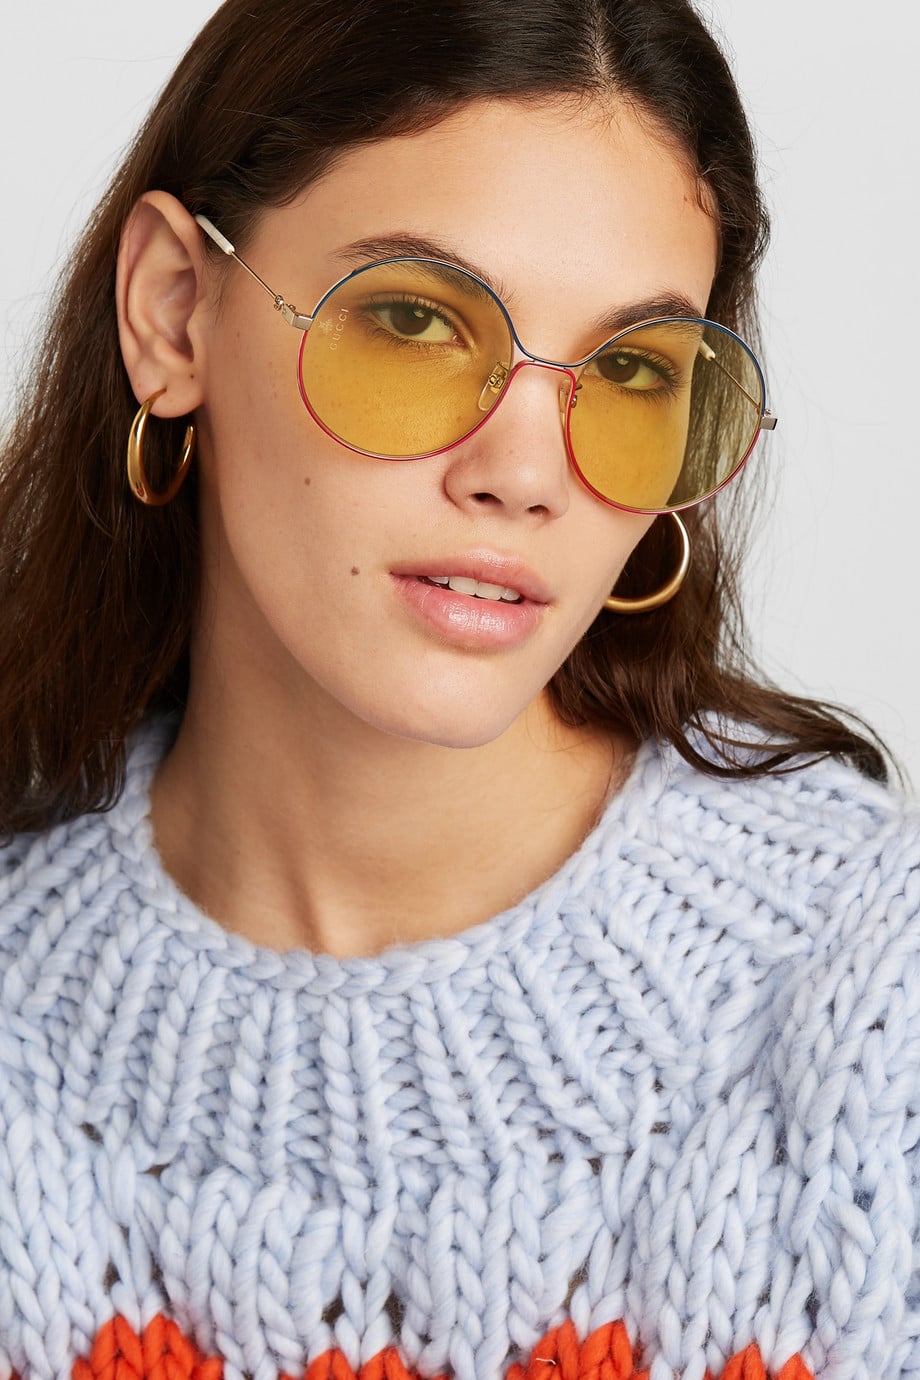 Hexagon Glasses For Girls